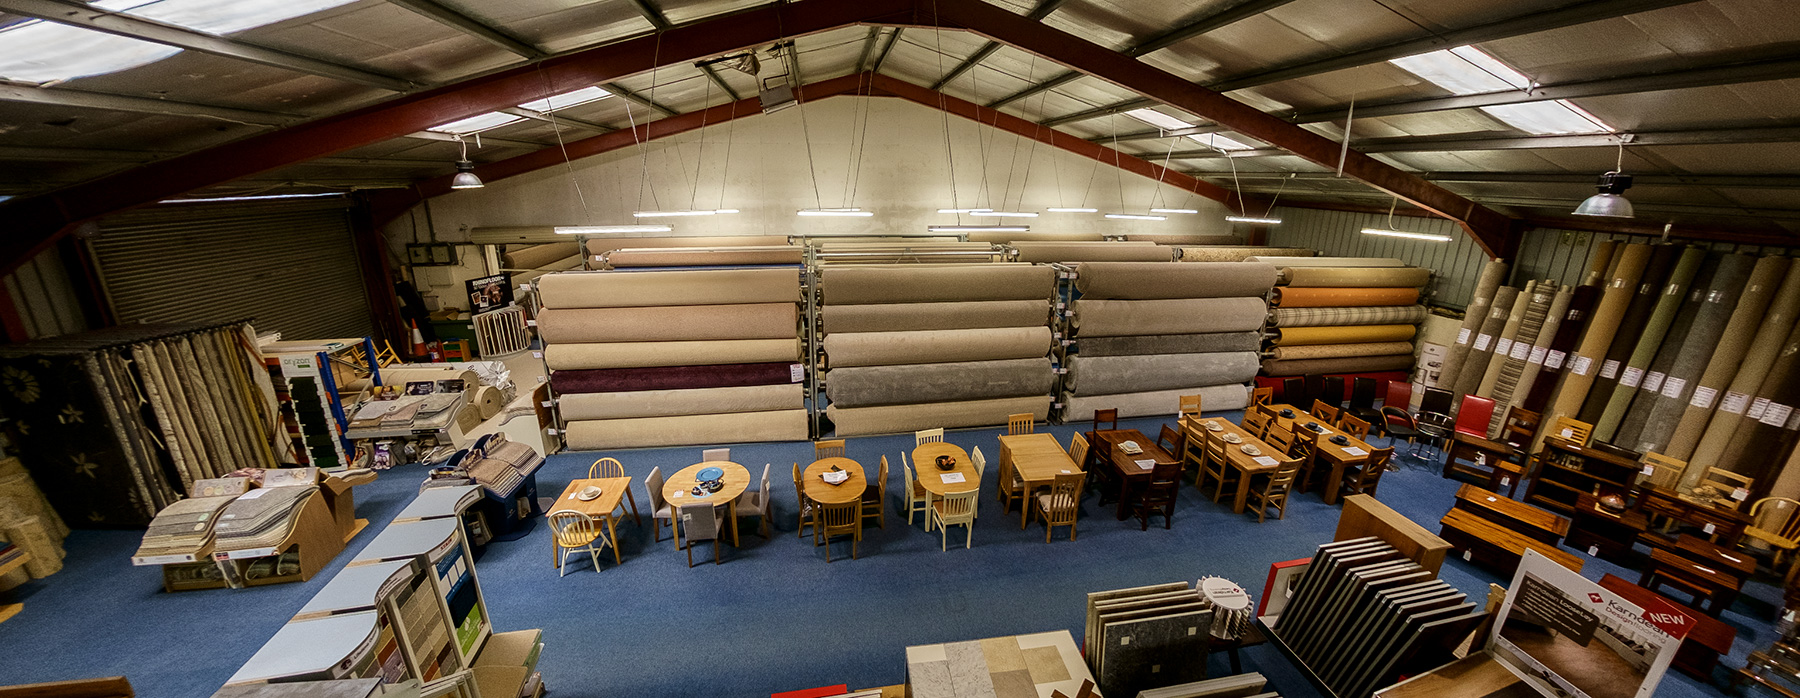 Furniture & Carpet Centre in Ireland